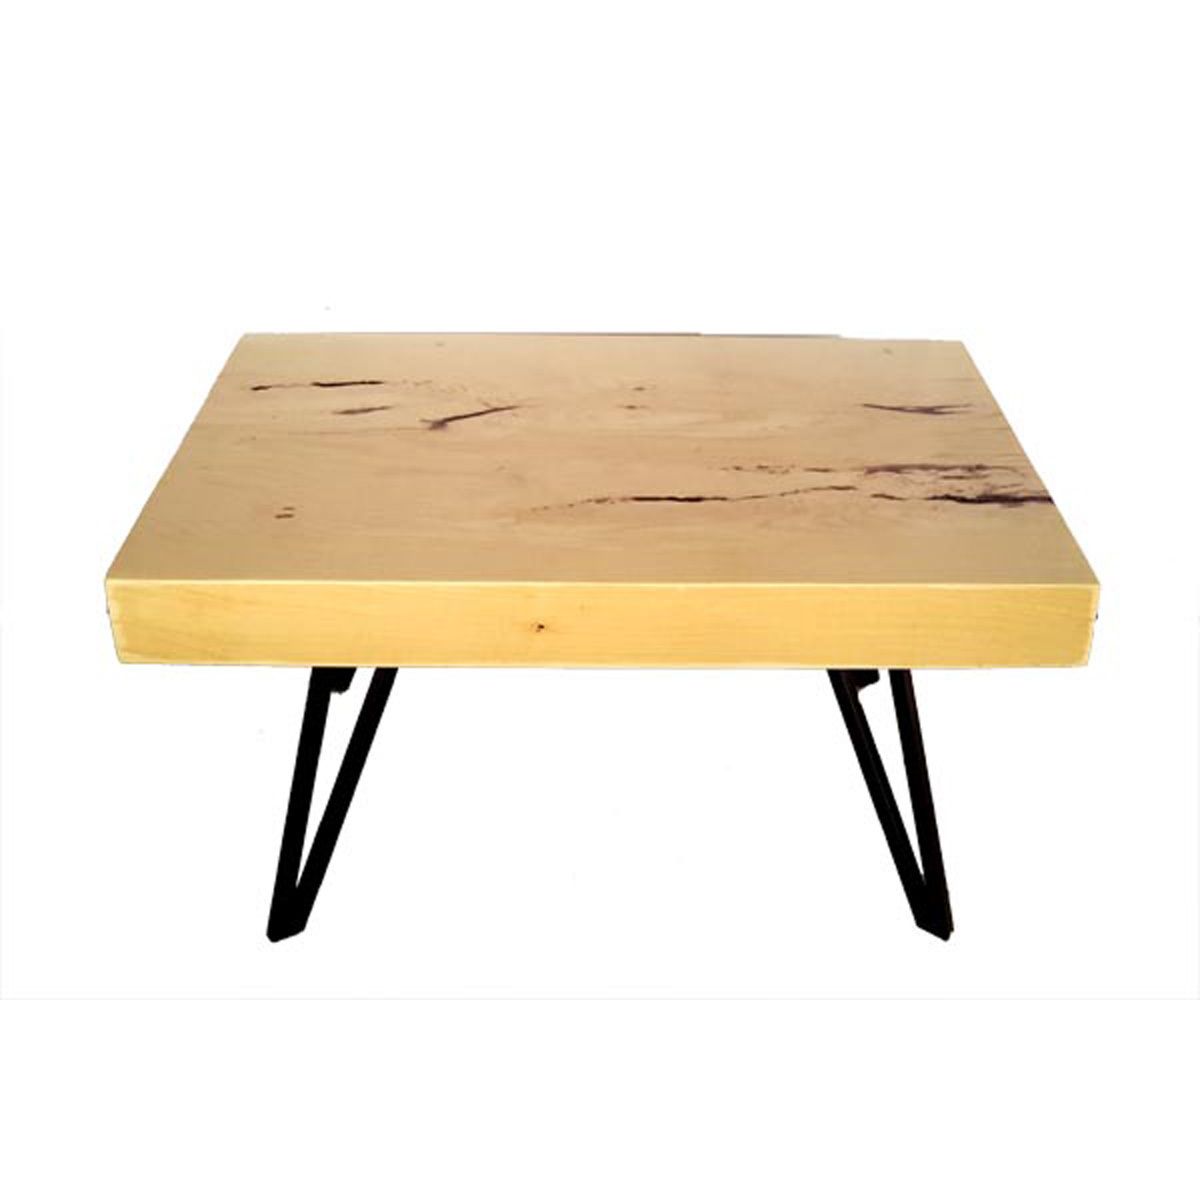 Holzstele Garten Schön Coffee Table Made From Tamarind Wood On Iron Legs 34w 24d